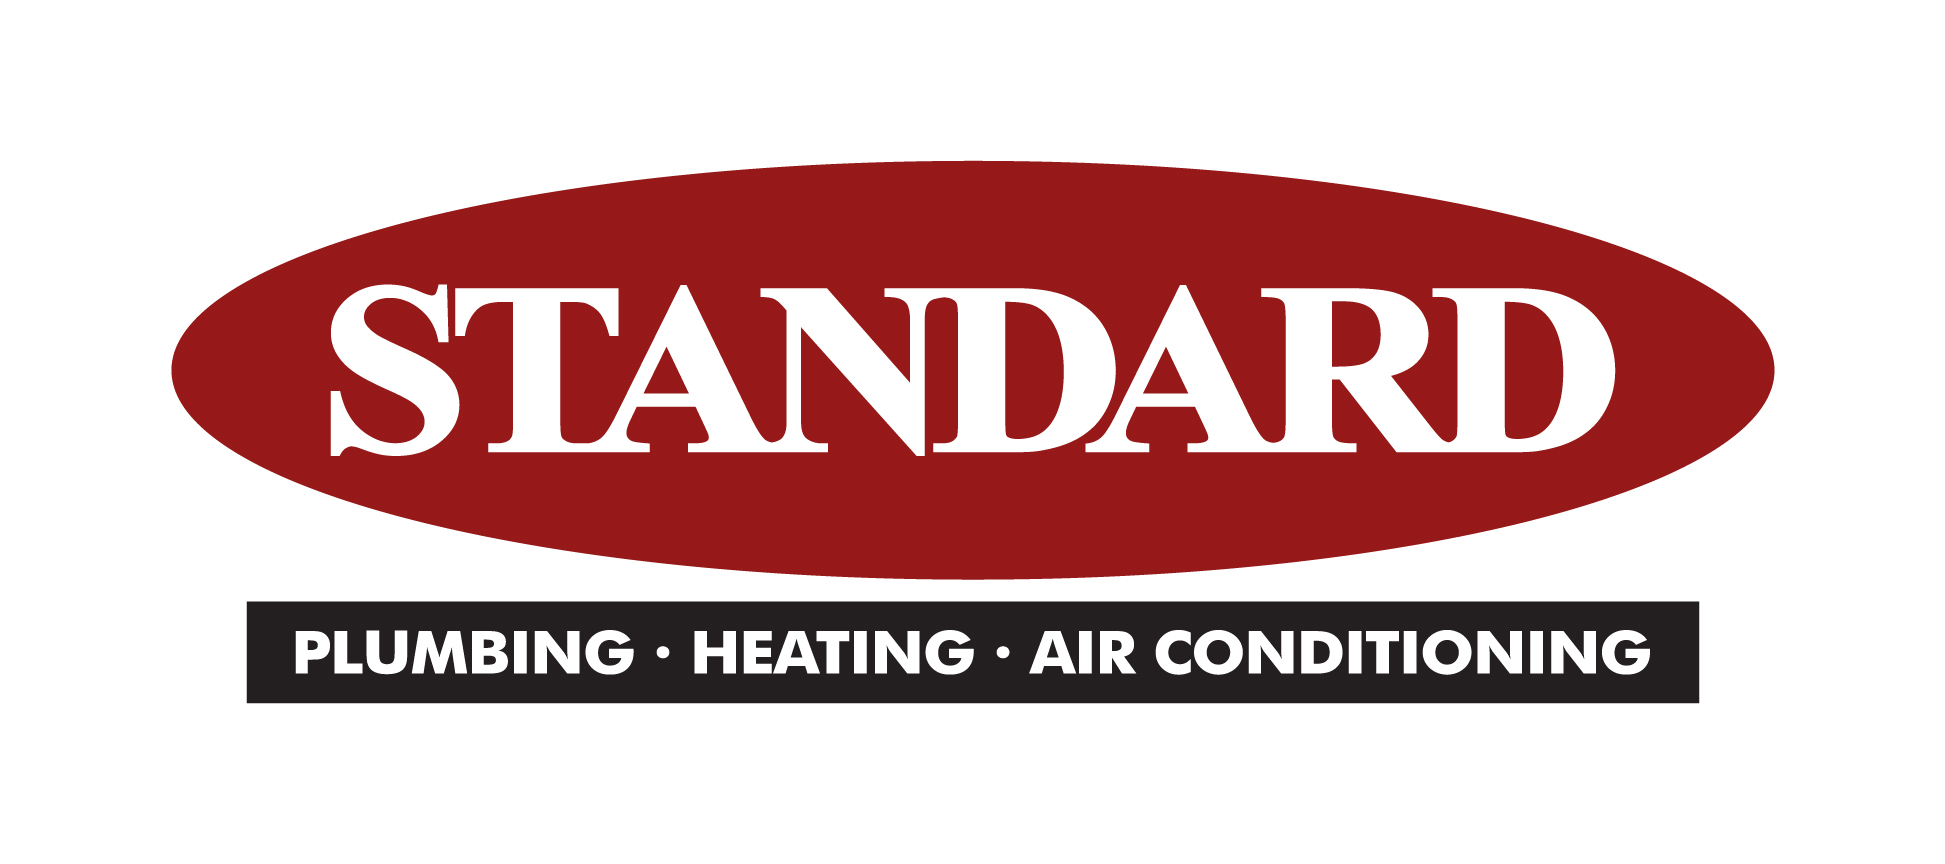 Standard Plumbing, Heating, & Air